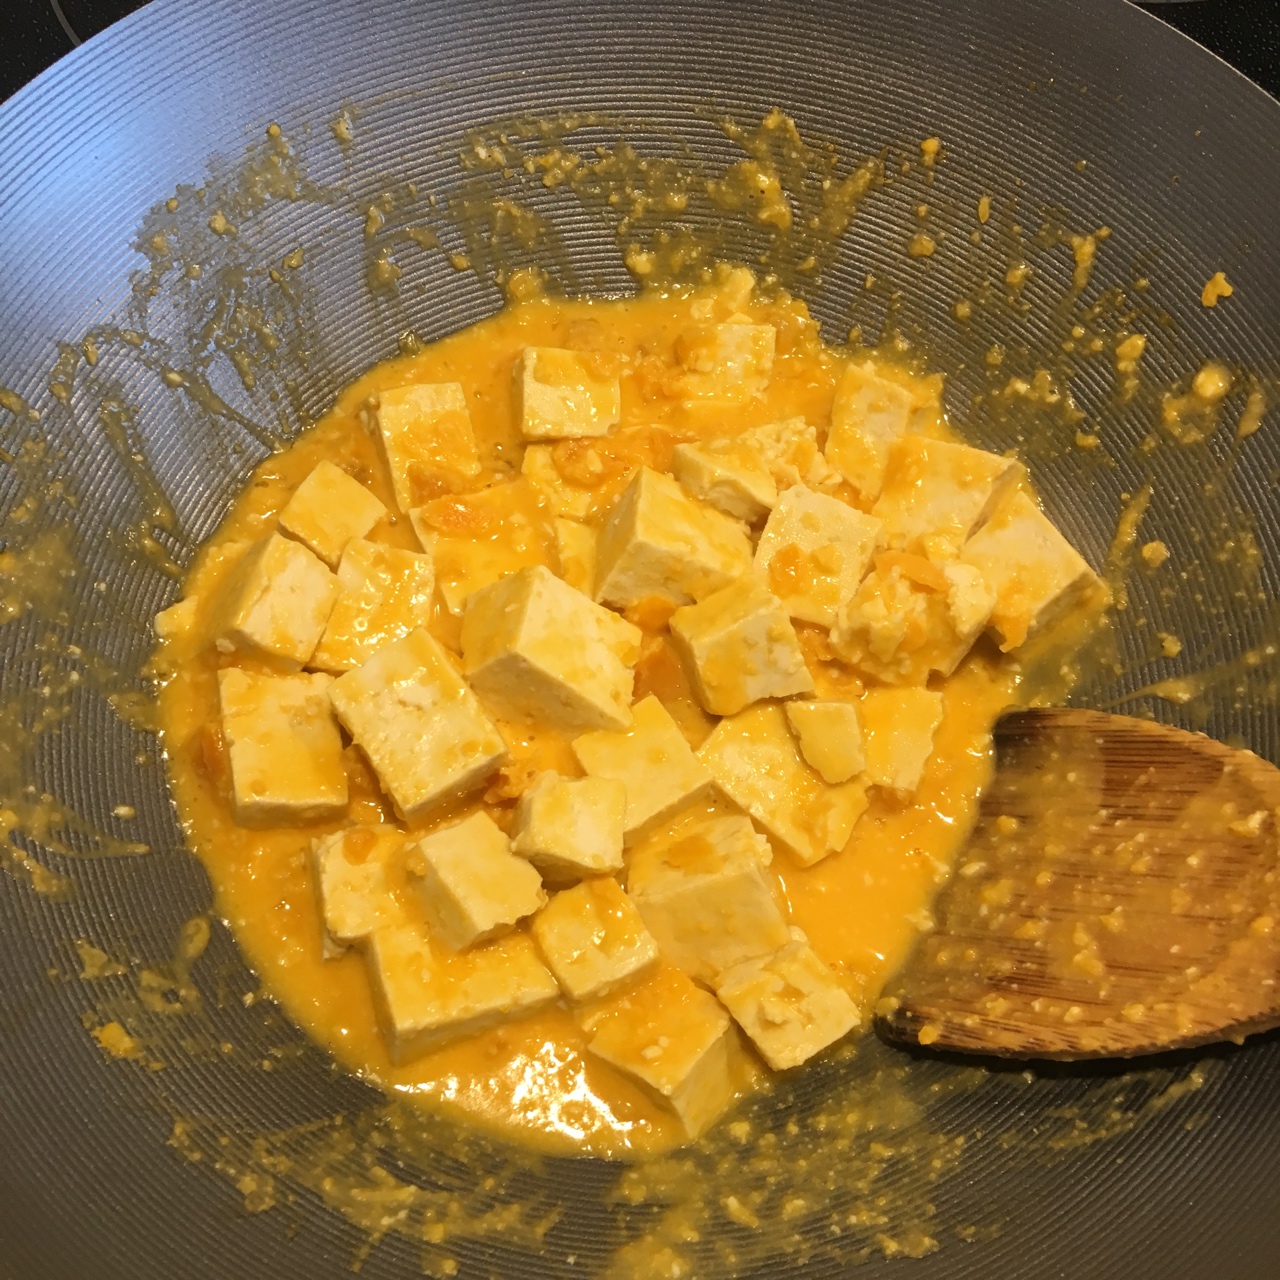 蛋黄豆腐